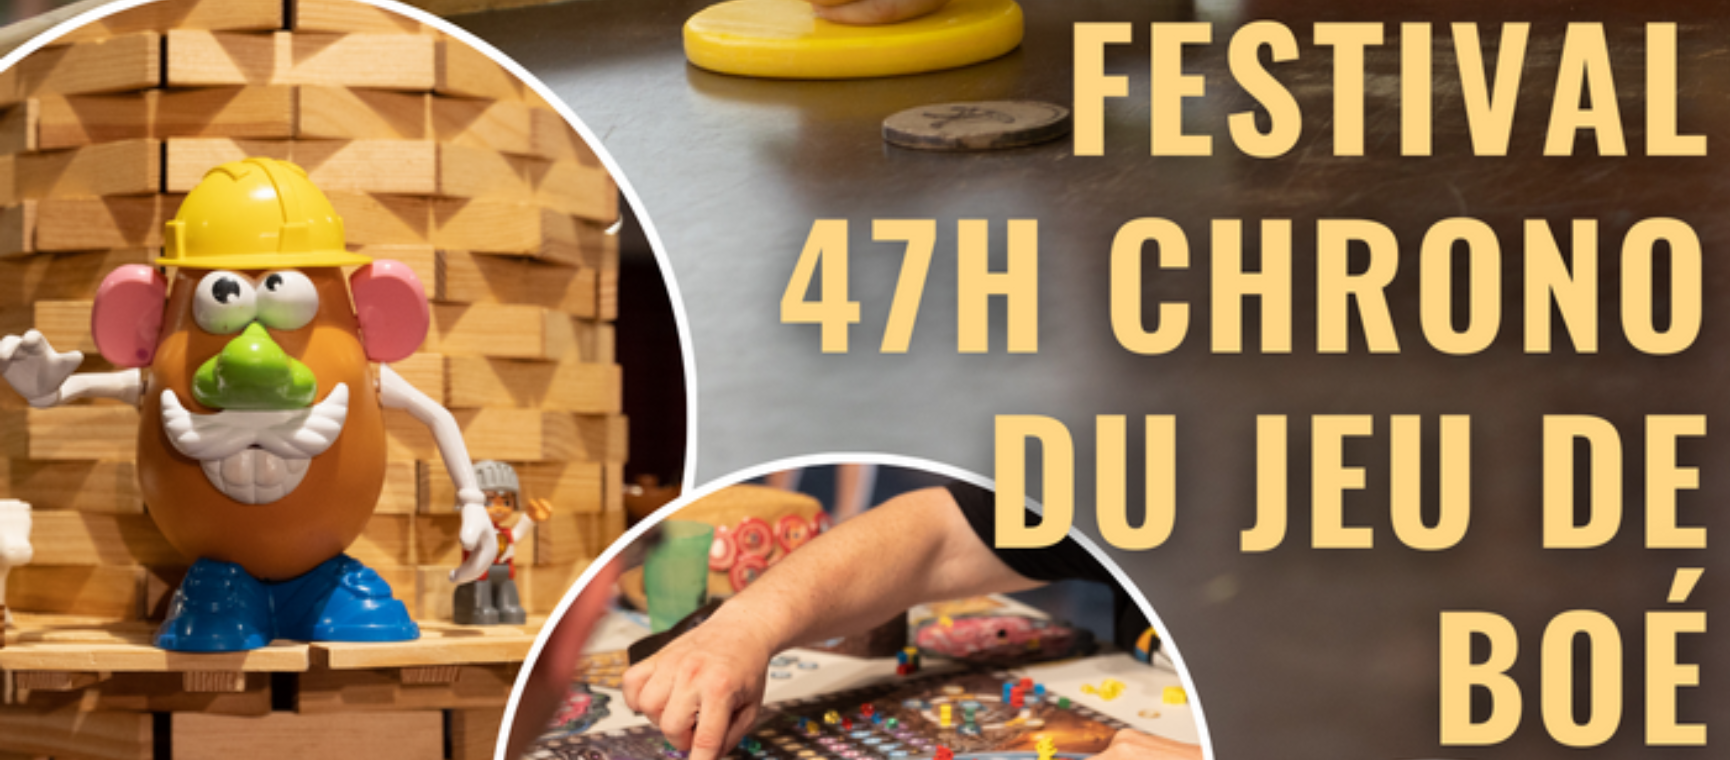 Agenda - Festival 47H Chrono du Jeu de Boé